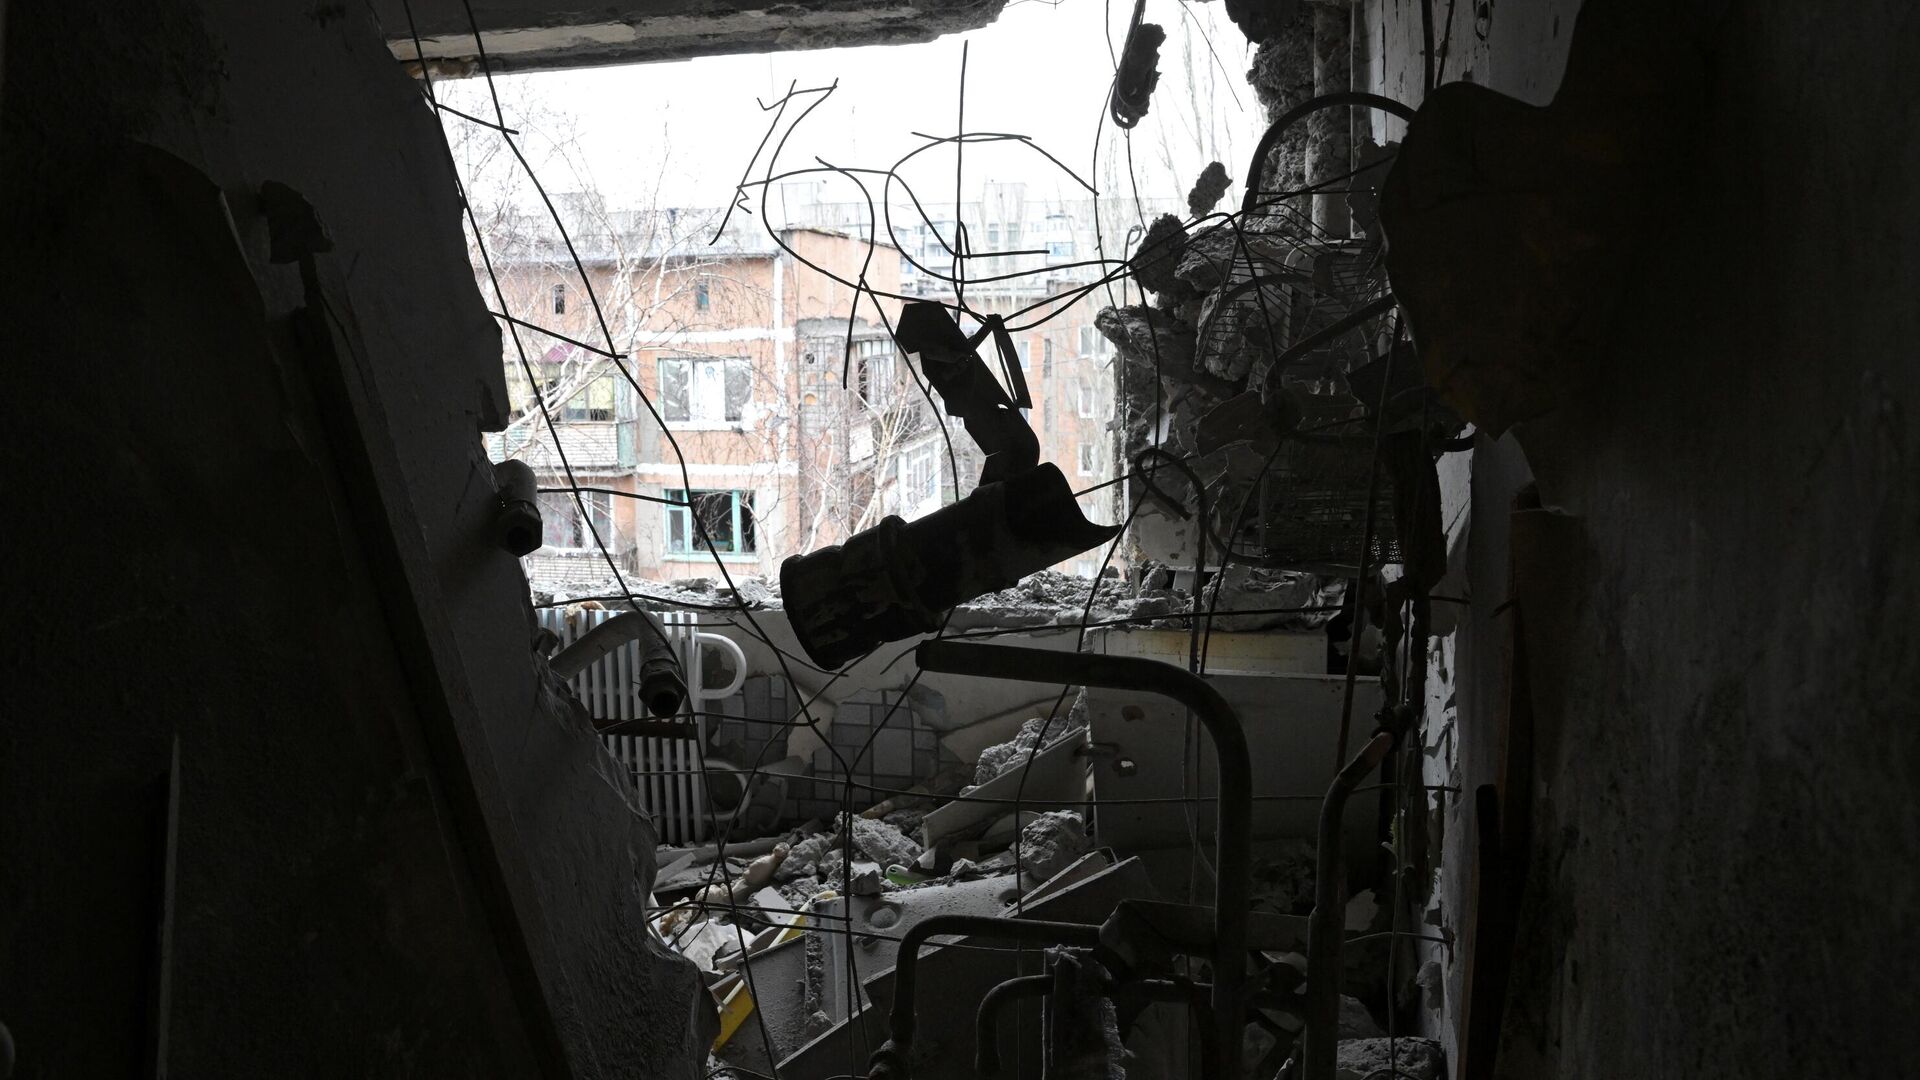 Квартира, пострадавшая в результате прямого попадания снаряда в жилой дом в Горловке - РИА Новости, 1920, 06.03.2022